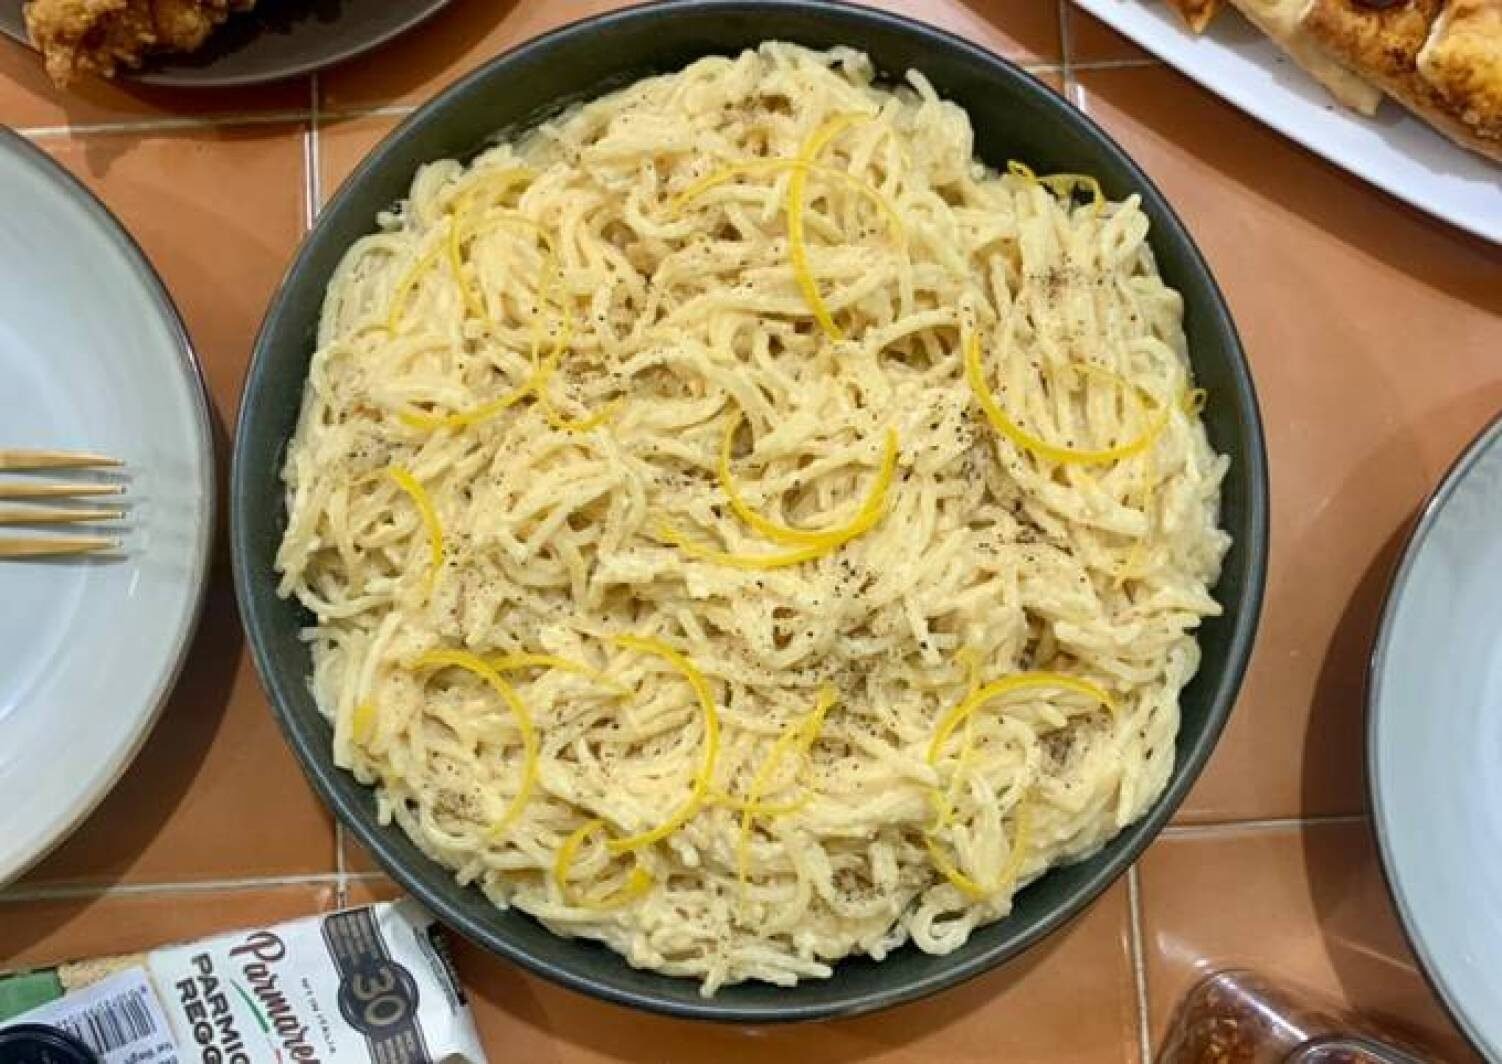 pasta-al-limone-recipe-main-photo-6526209